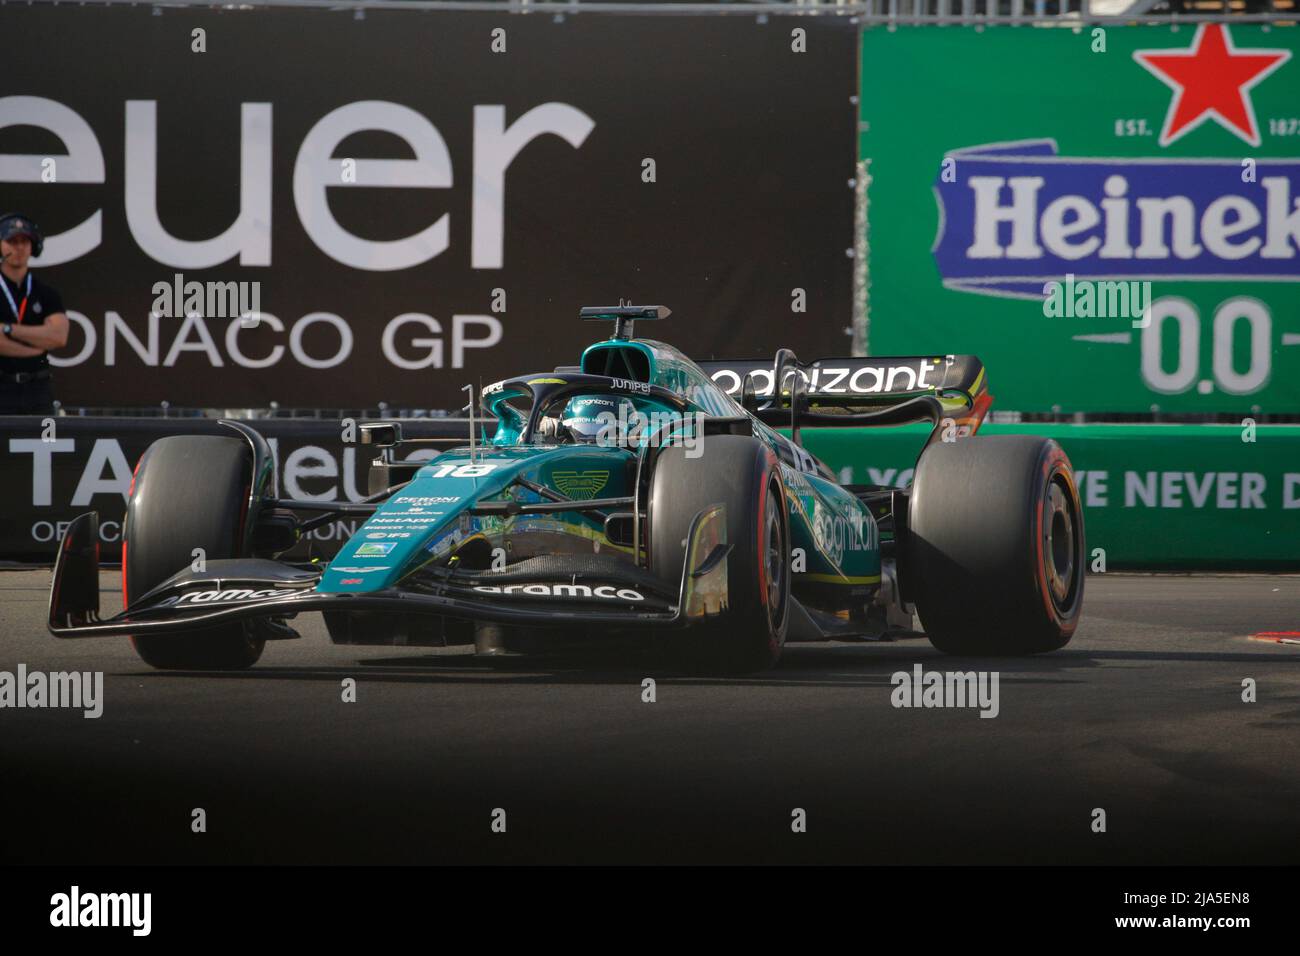 Formule 1 Grand Prix de la ville de Montecarlo Monaco ville Banque D'Images